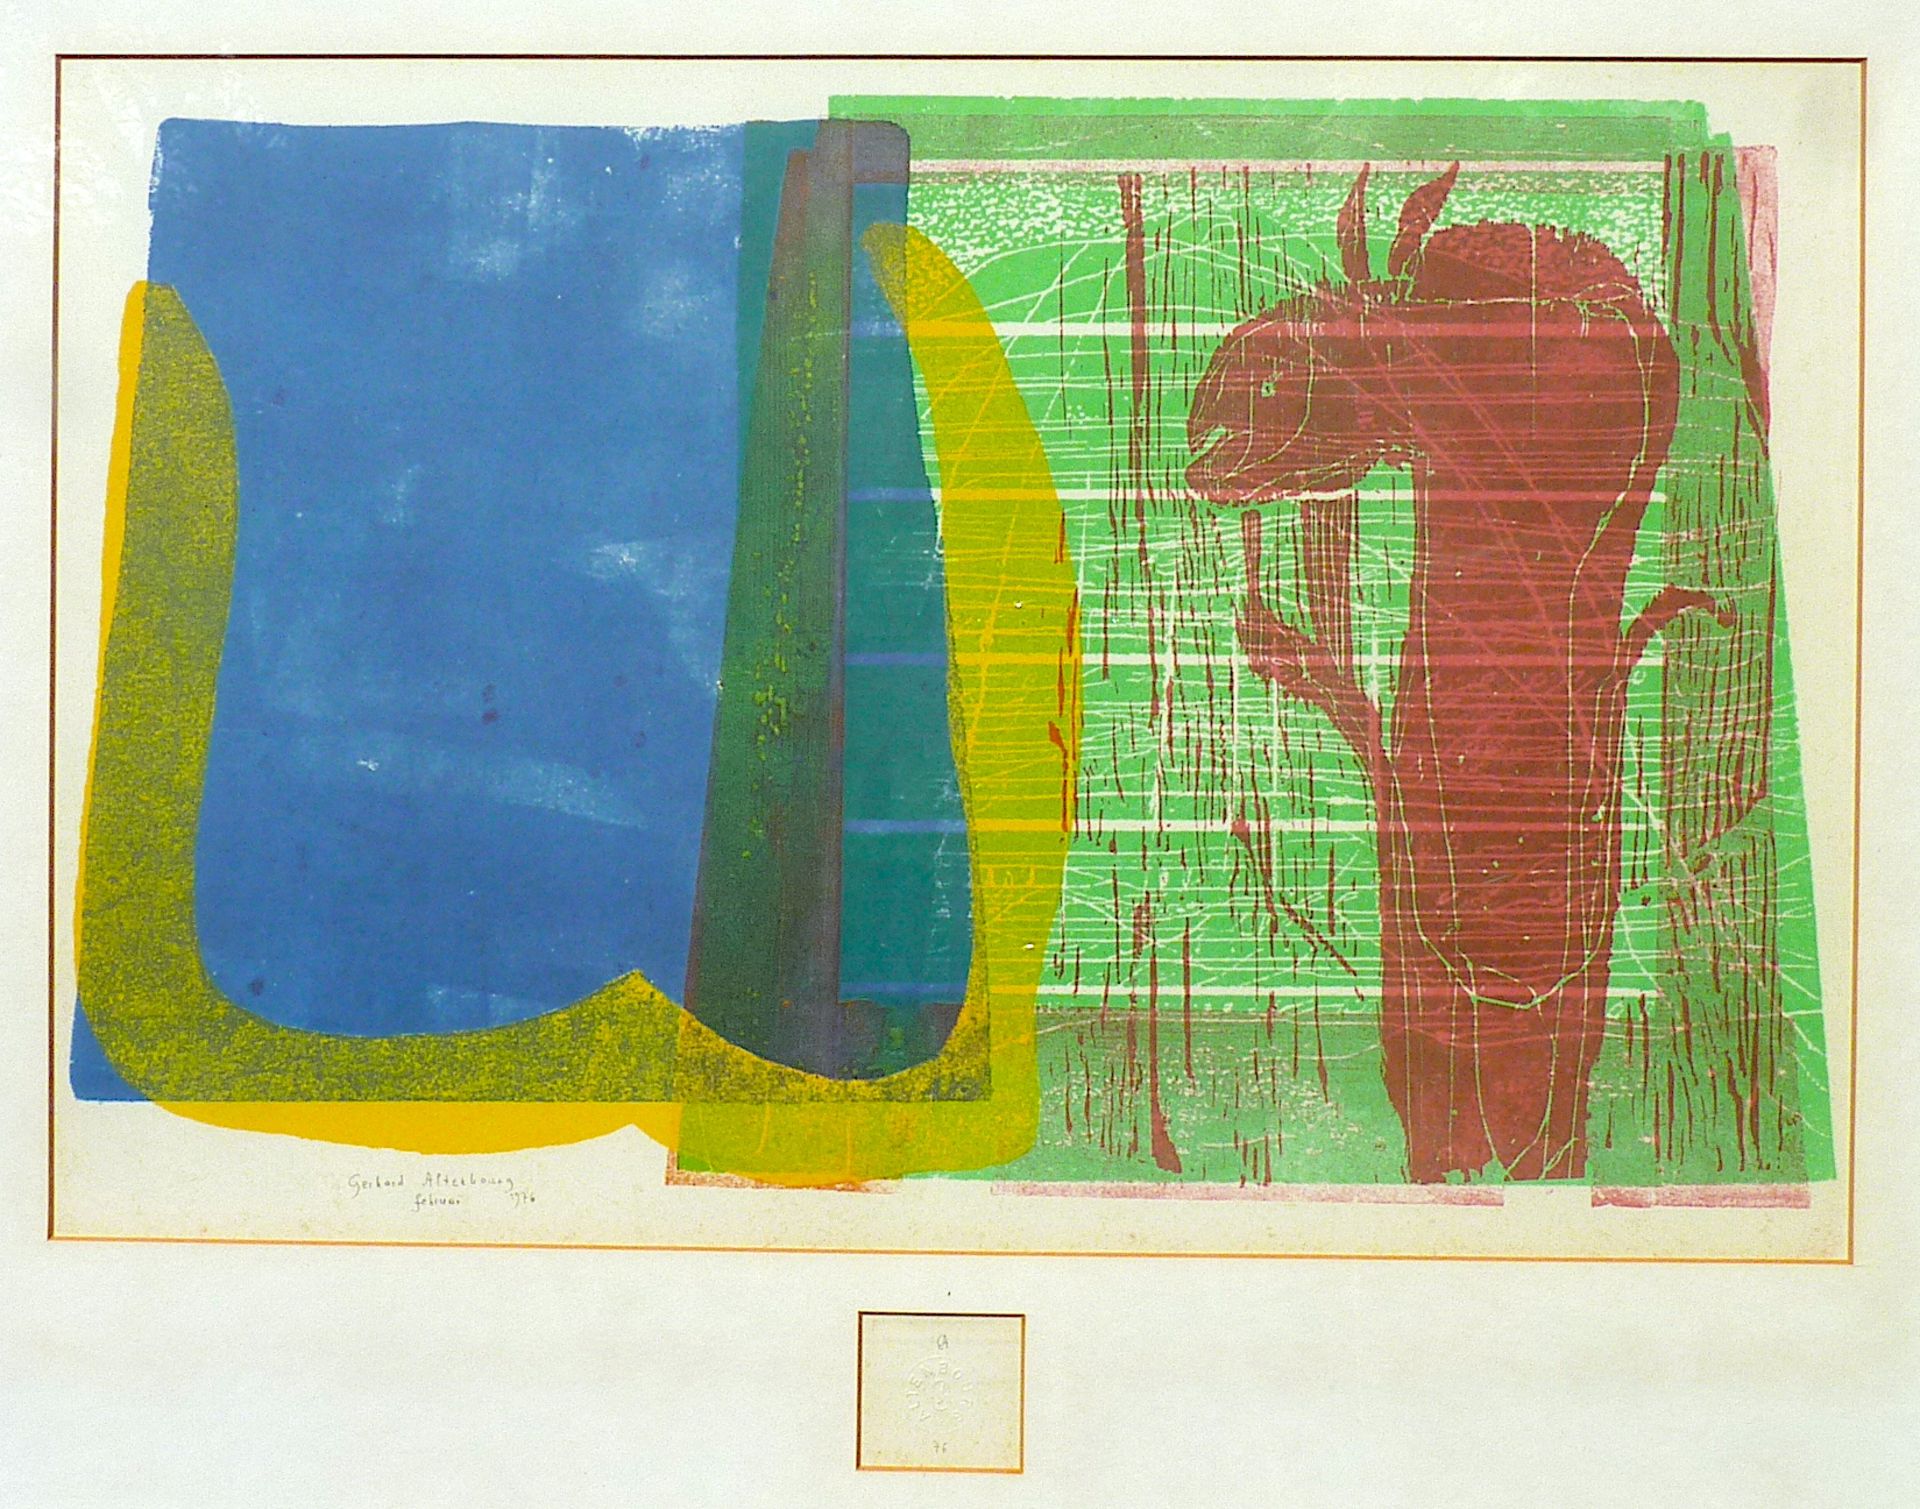 ALTENBOURG, GERHARD (Gerhard Ströch): "Das leere Blau vor der Insel", 1976